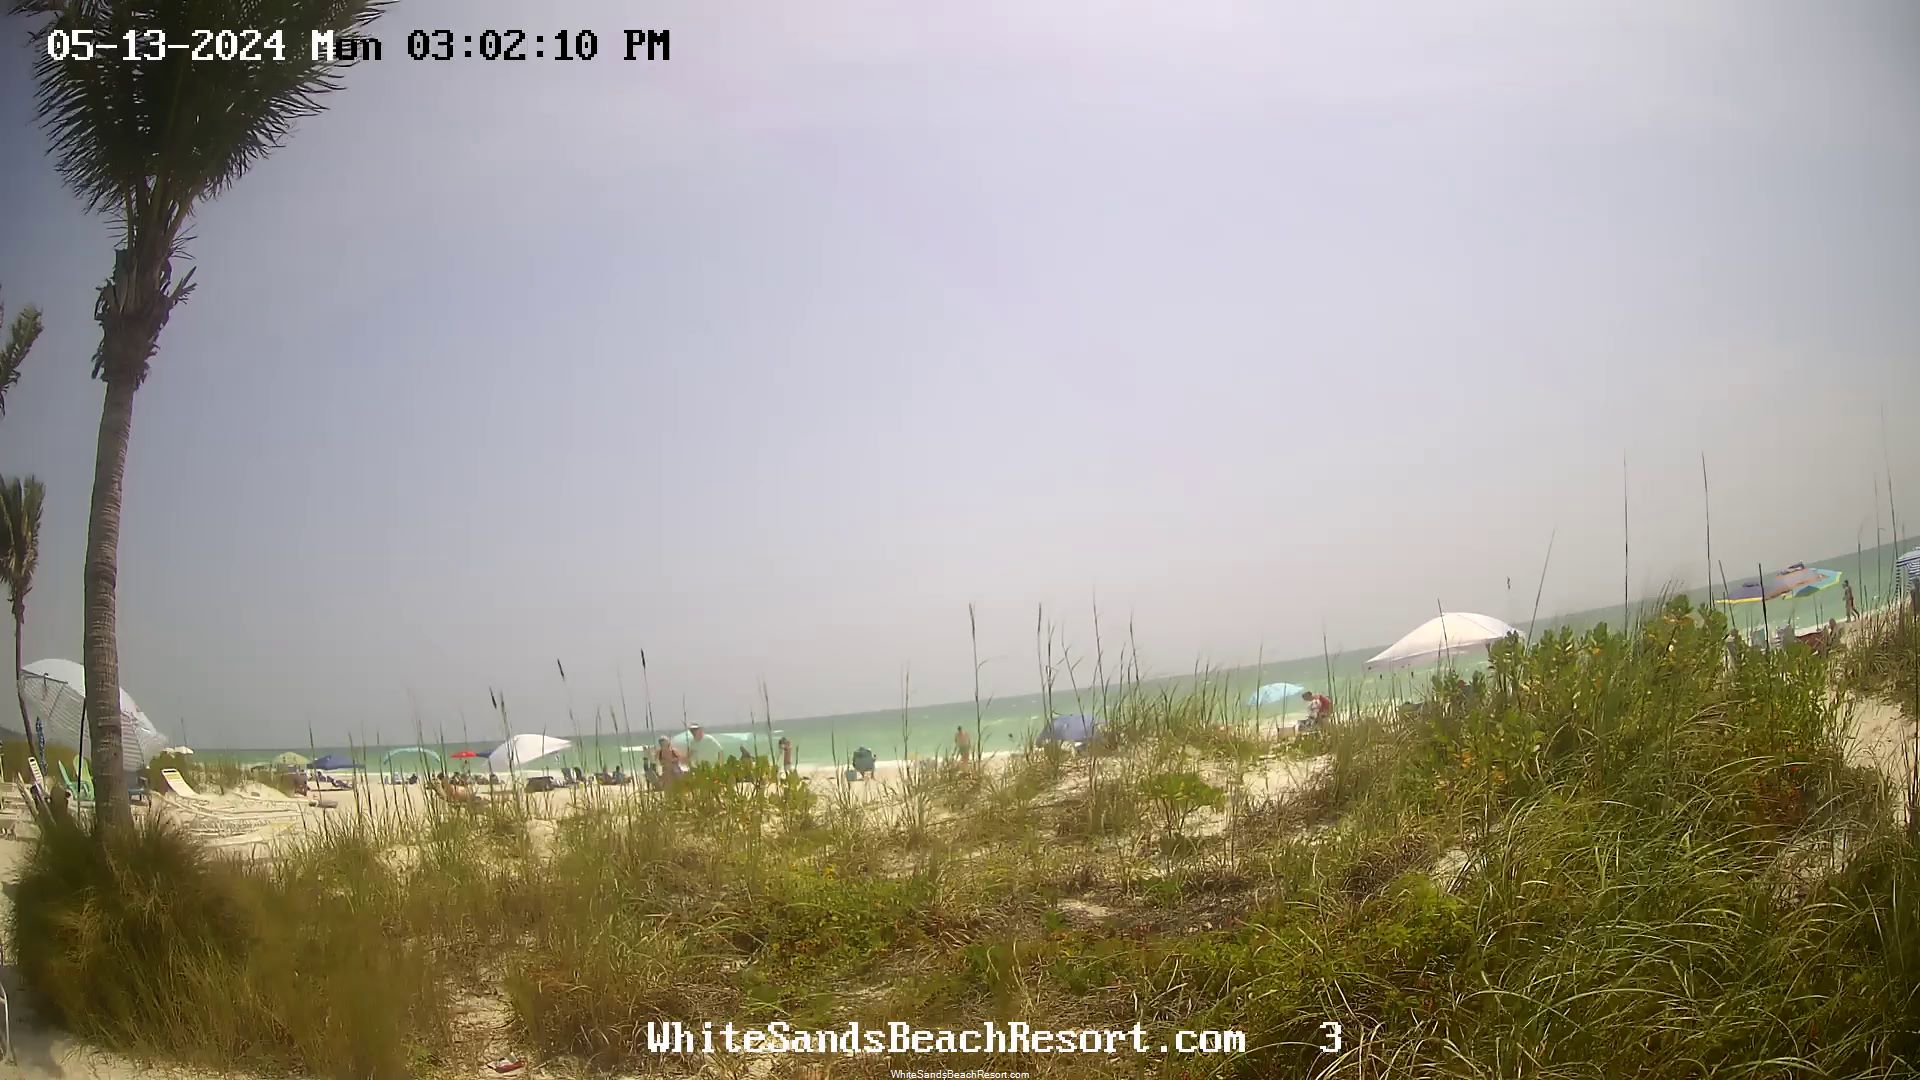 Holmes Beach, Florida Vie. 14:56